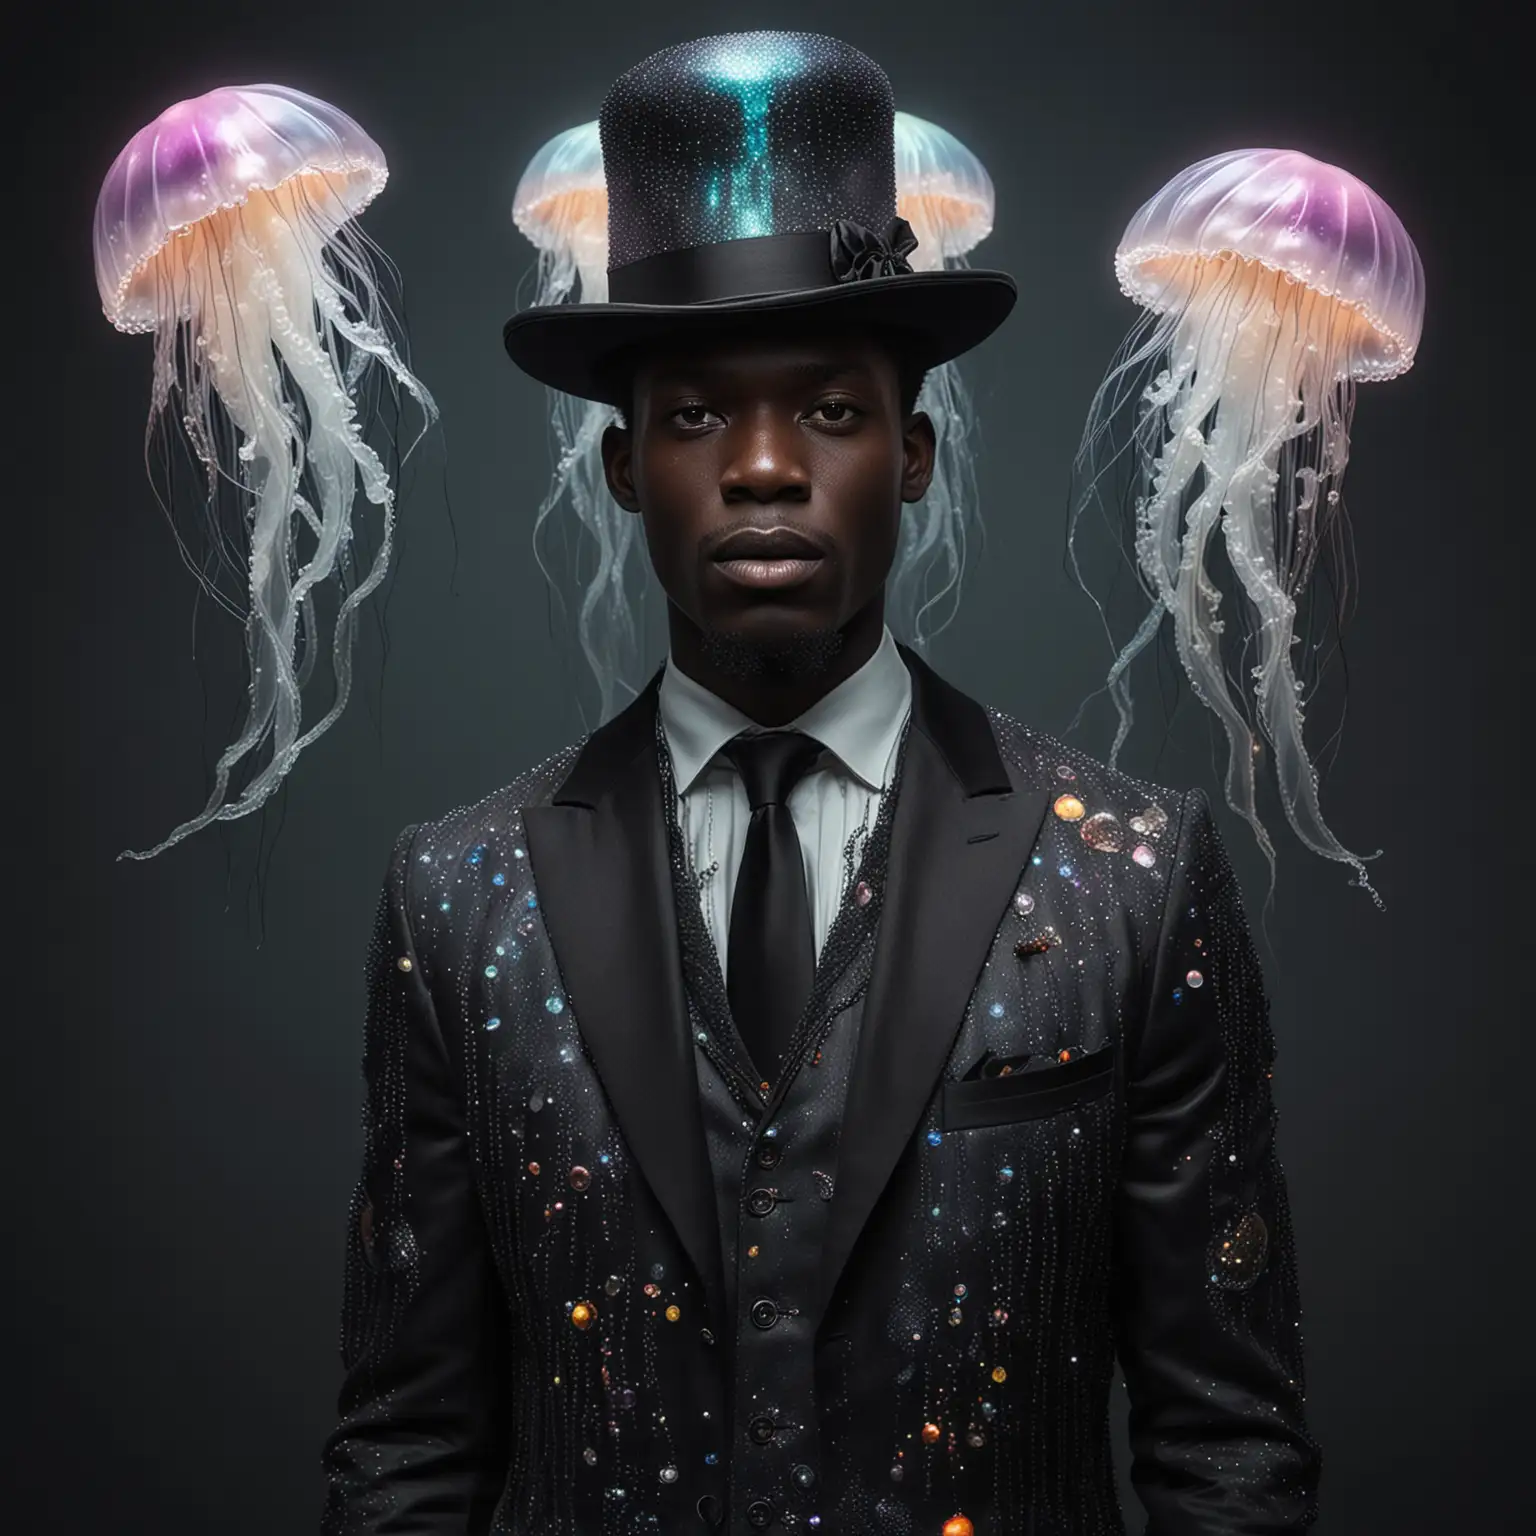 hombre de senegal vestido de dandy, traje hecho con medusas iridiscentes, 
medusas reales cuelgan sobre los hombros y el sombrero, estilo hiperrealista, oscuro, gothic
